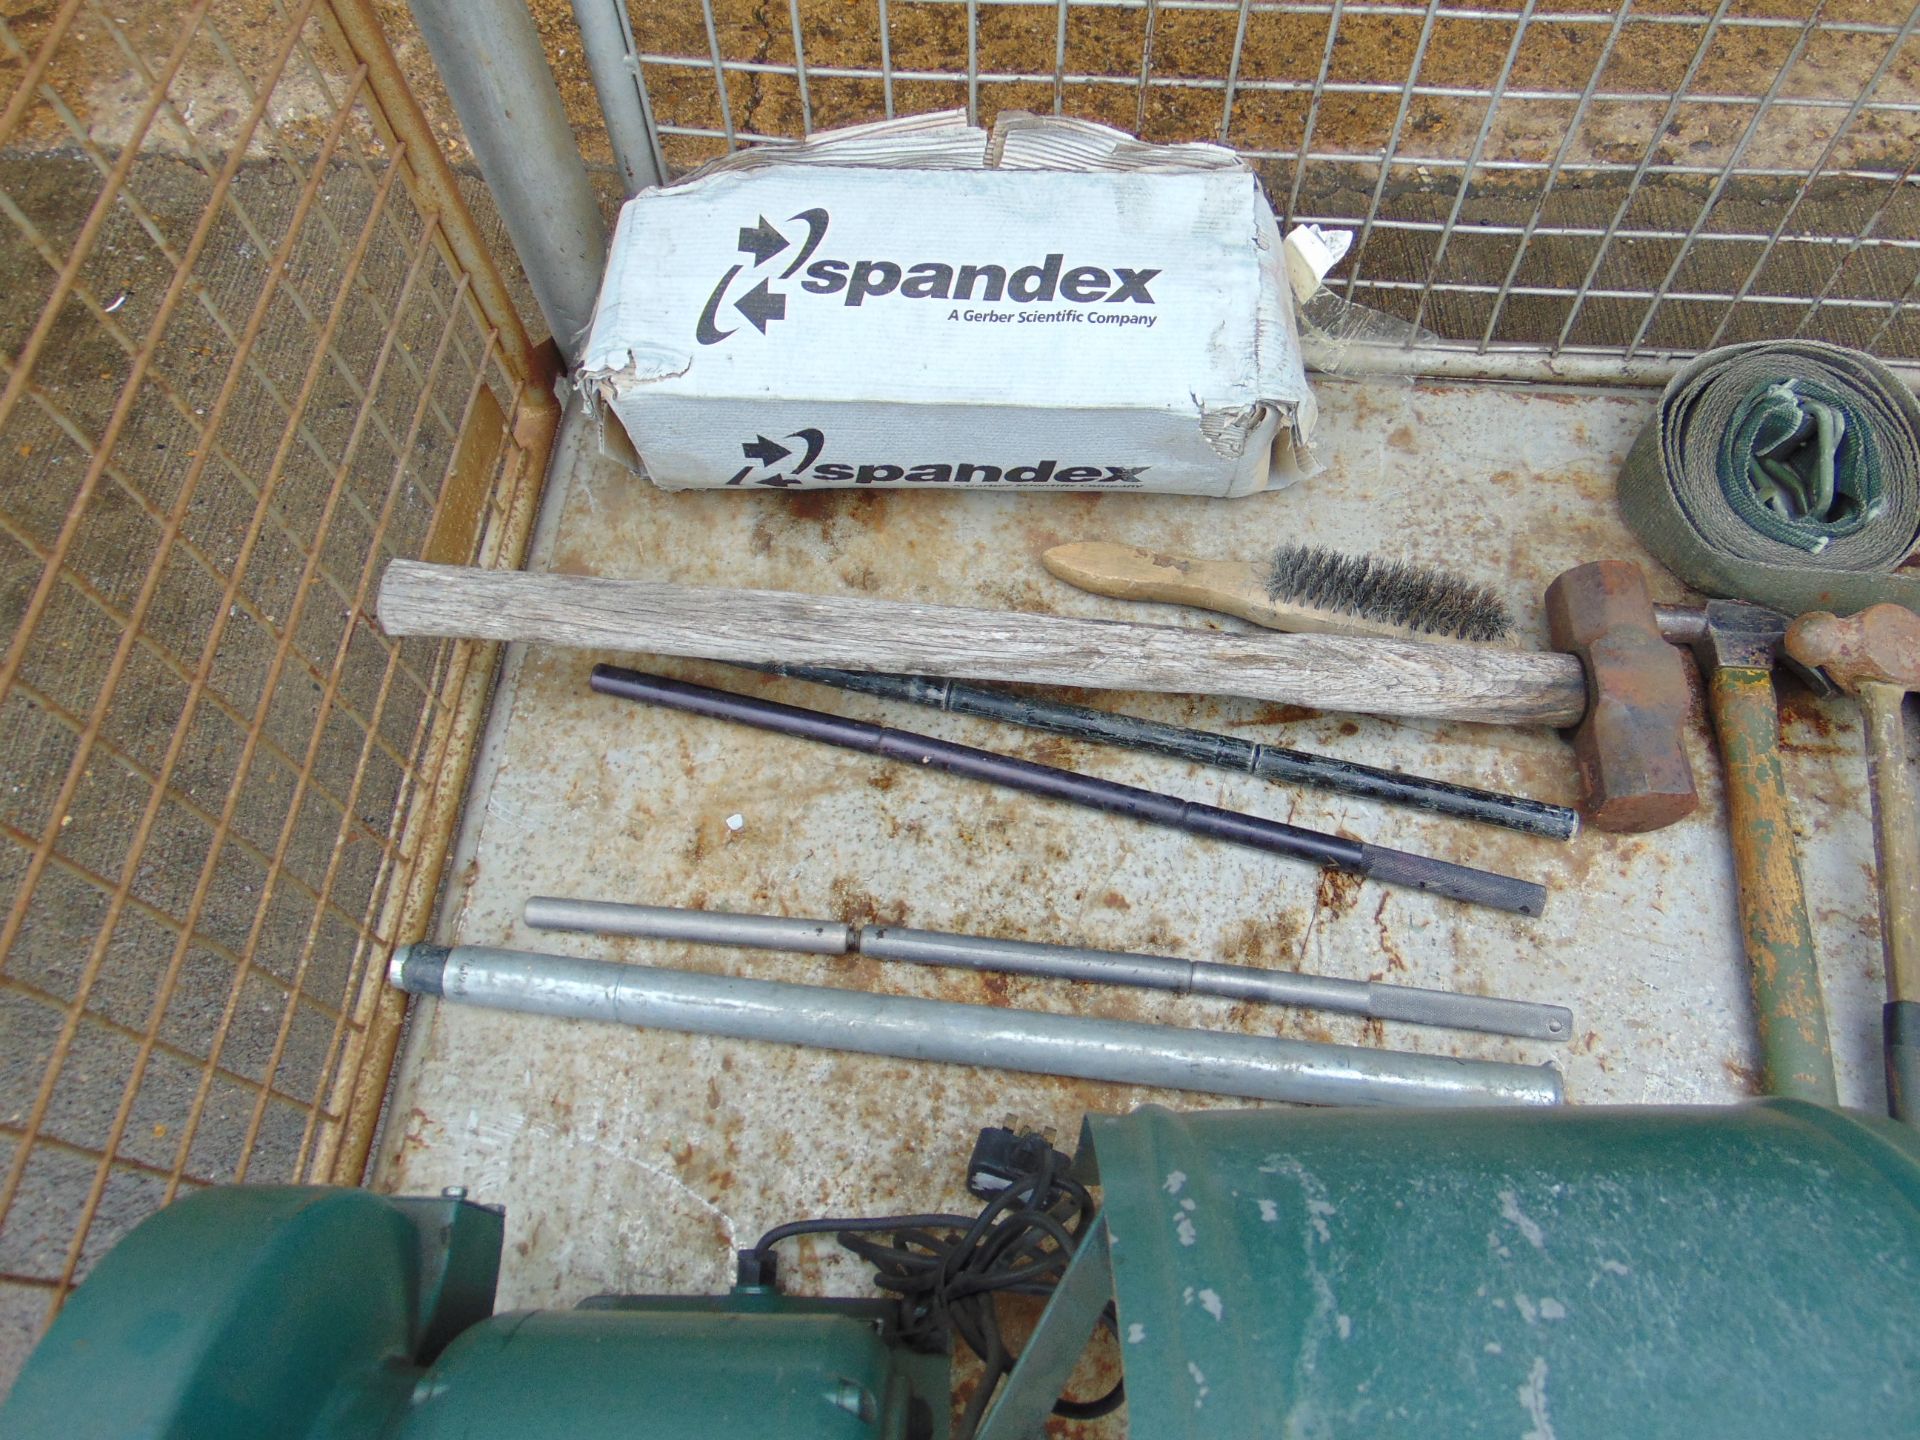 1x Stillage of Workshop Tools inc Grinder, Torque Wrench etc - Image 8 of 9